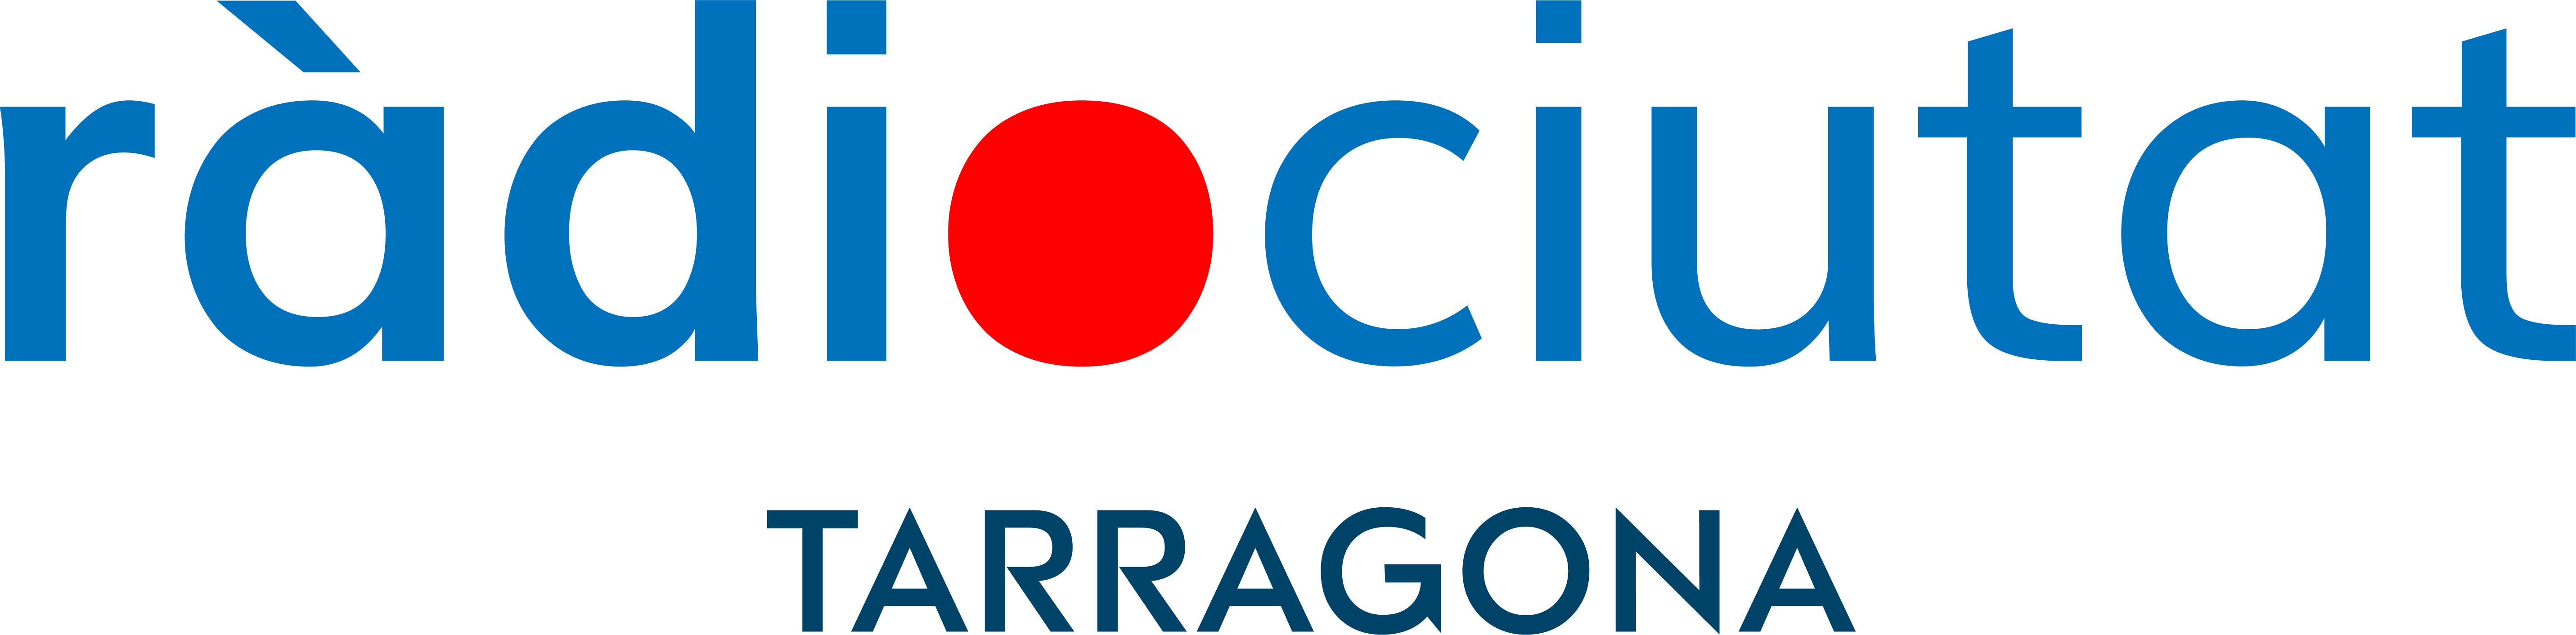 LOGO-RCTGN-RADIO-CIUTAT-DE-TARRAGONA-TRANSPARENTE-TARRAGONA-logo-rctgn-2020-HOR-COLOR